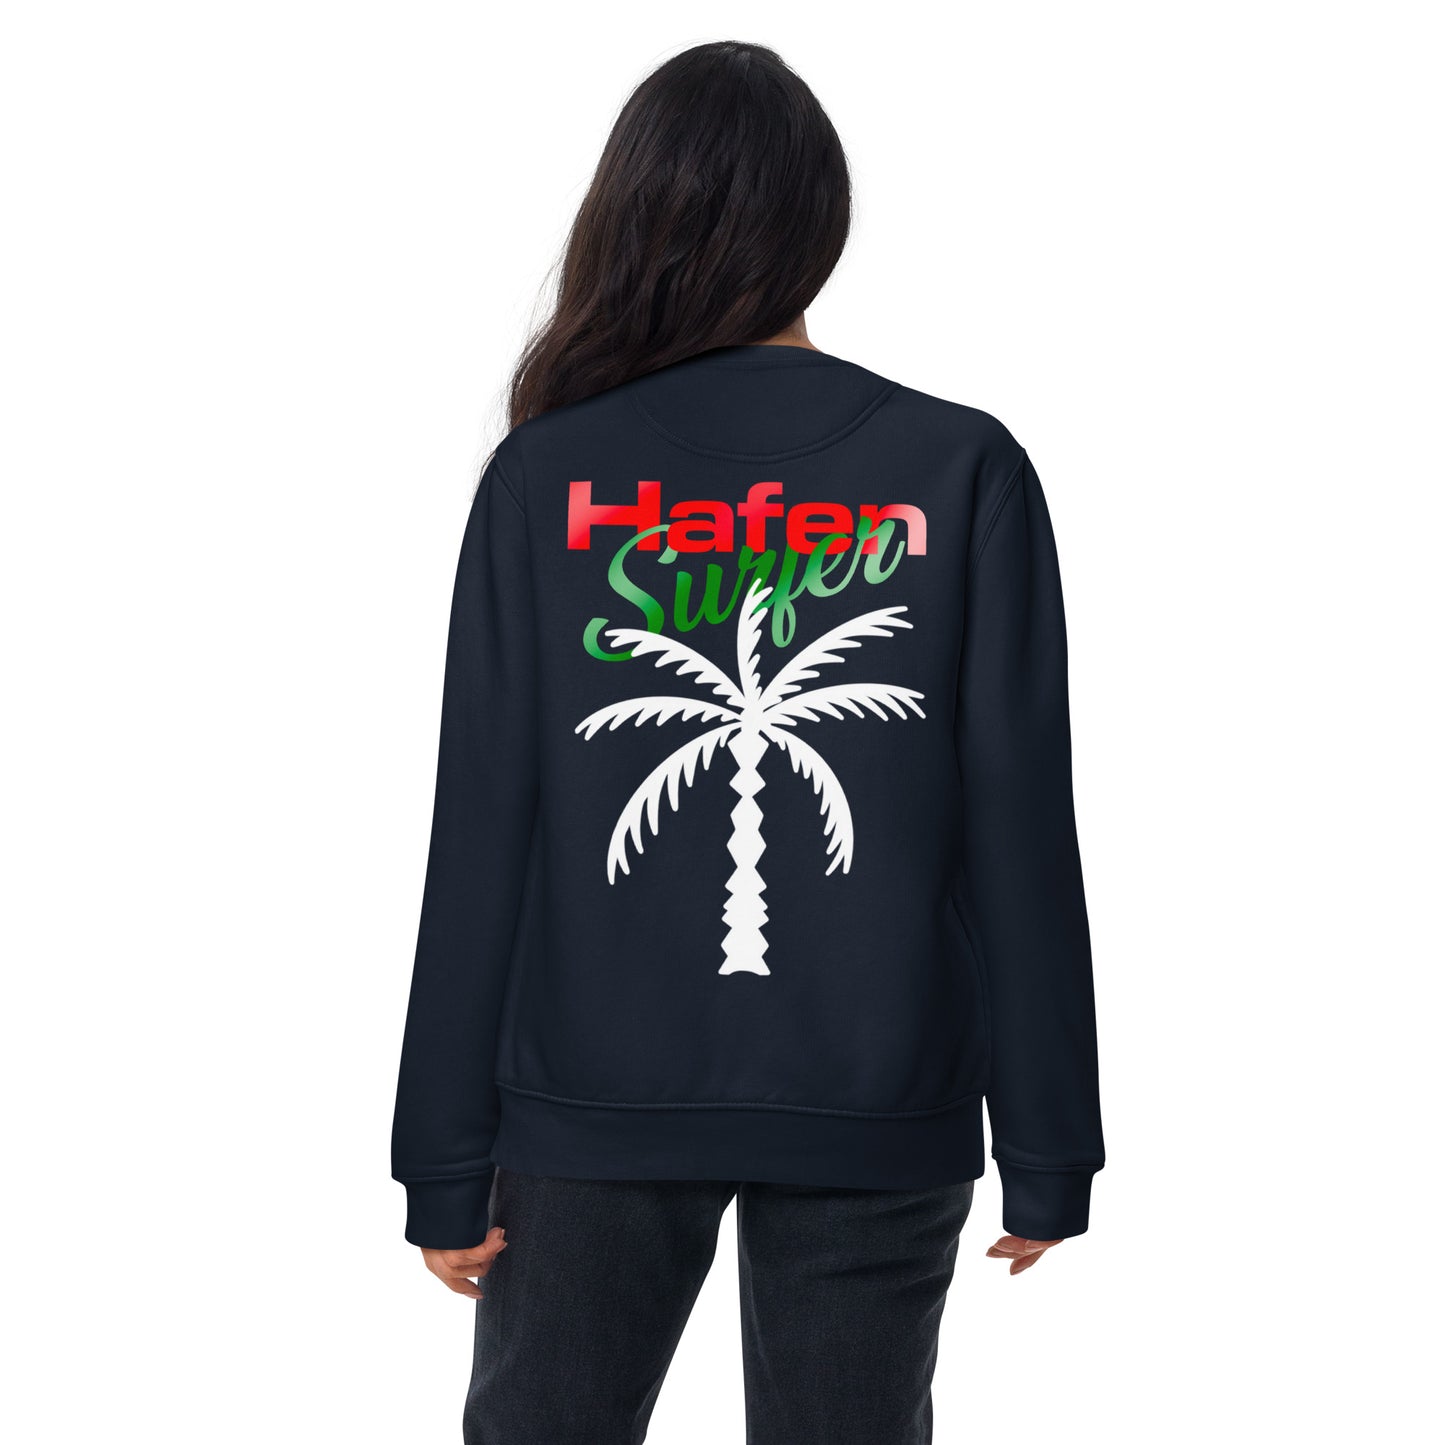 Hafensurfer Unisex Premium Sweatshirt Palm